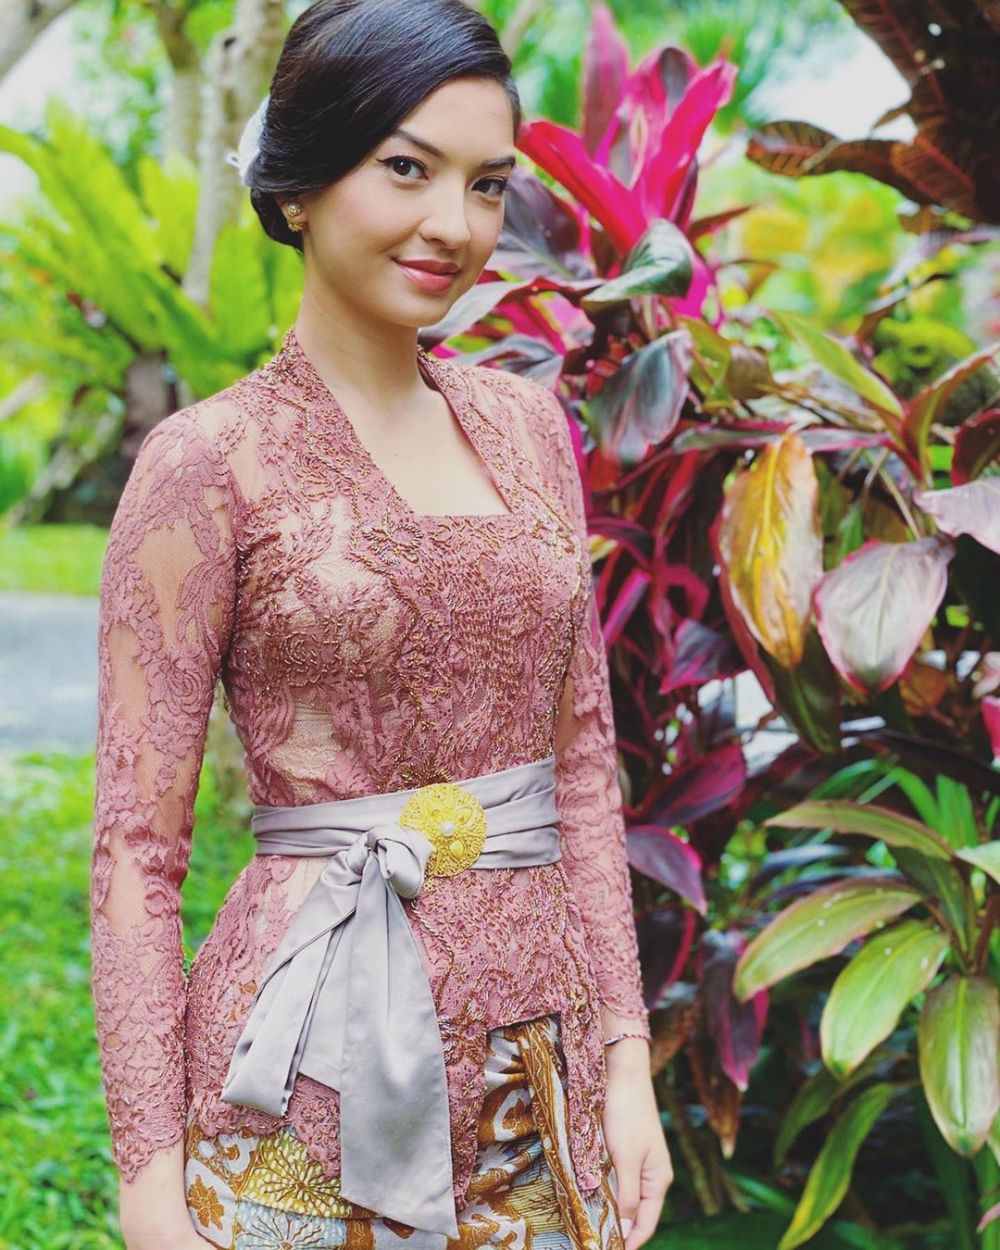 Pesona 9 seleb blasteran pakai baju adat Bali, Luna Maya menawan